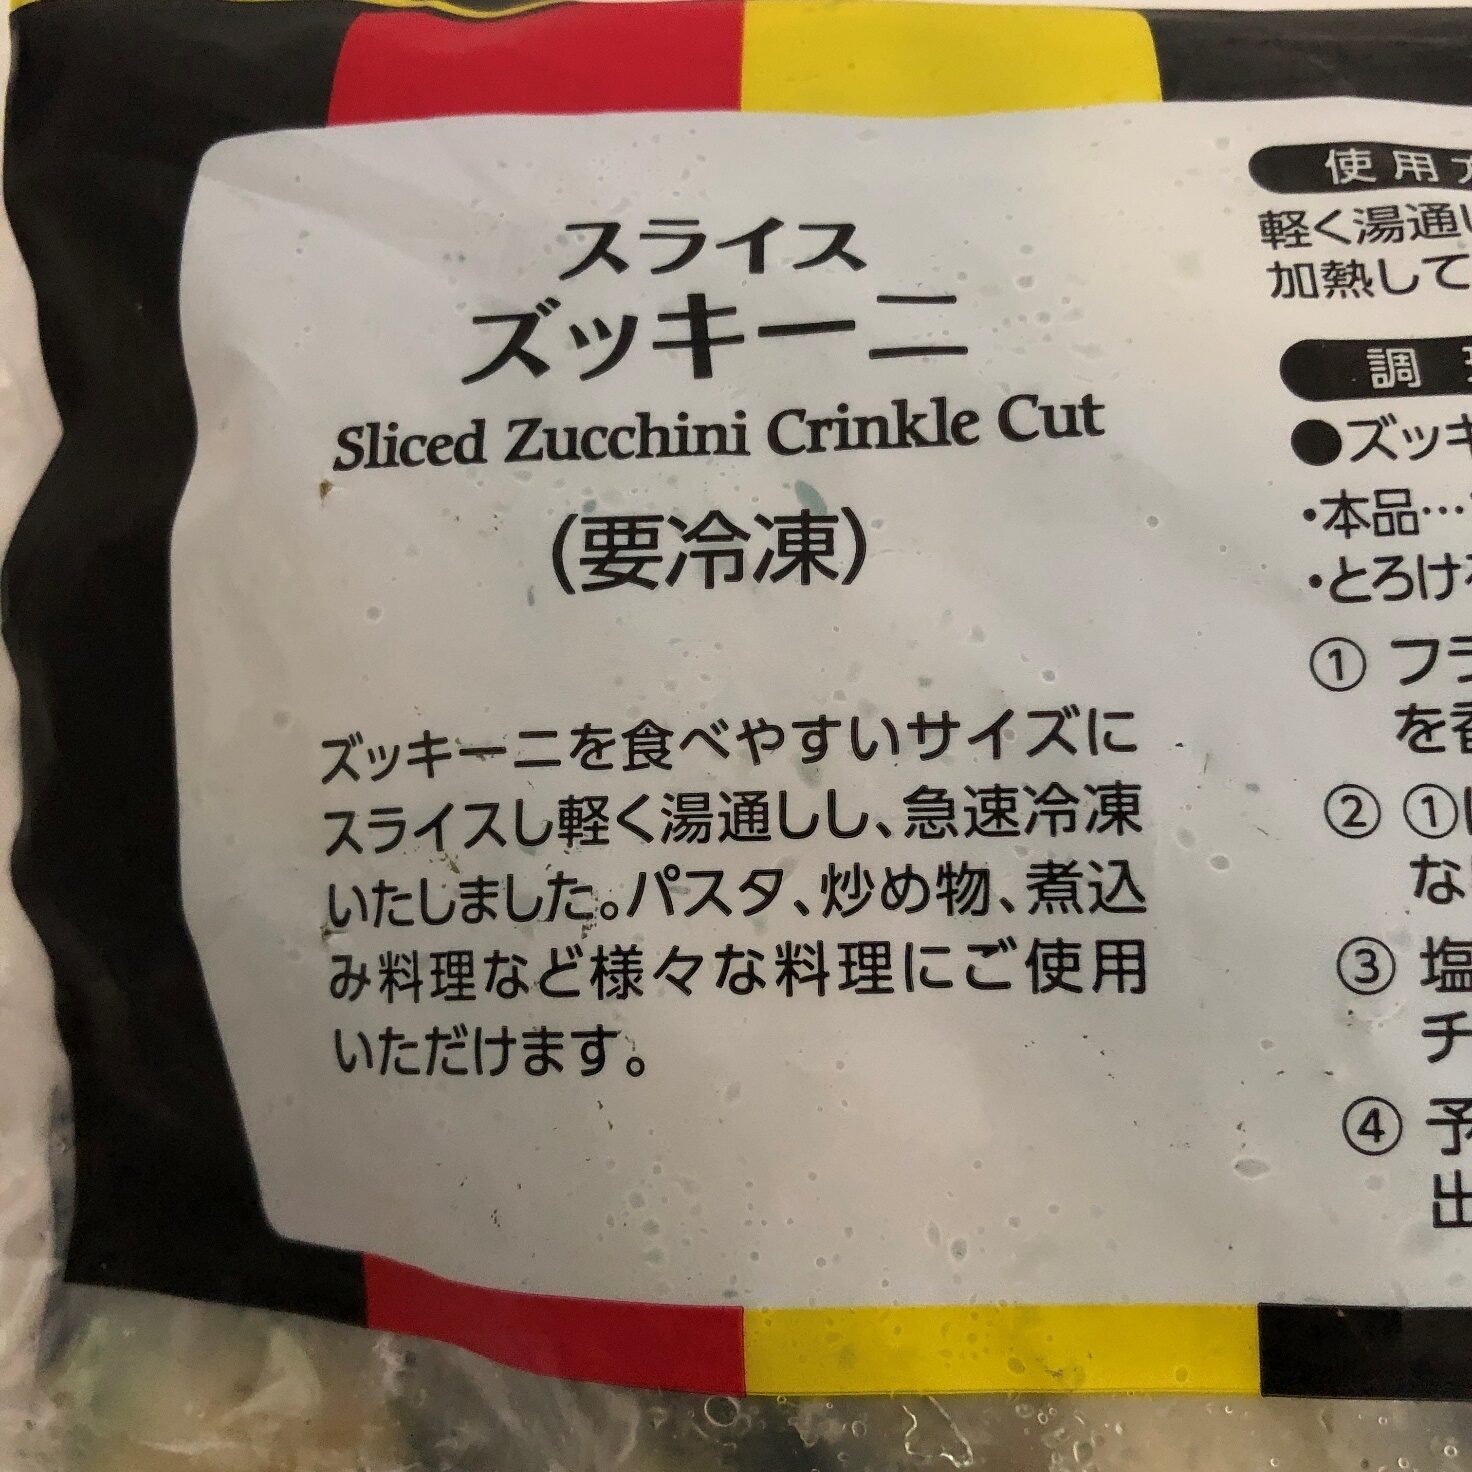 業務スーパーのズッキーニのパッケージに記載されている商品説明